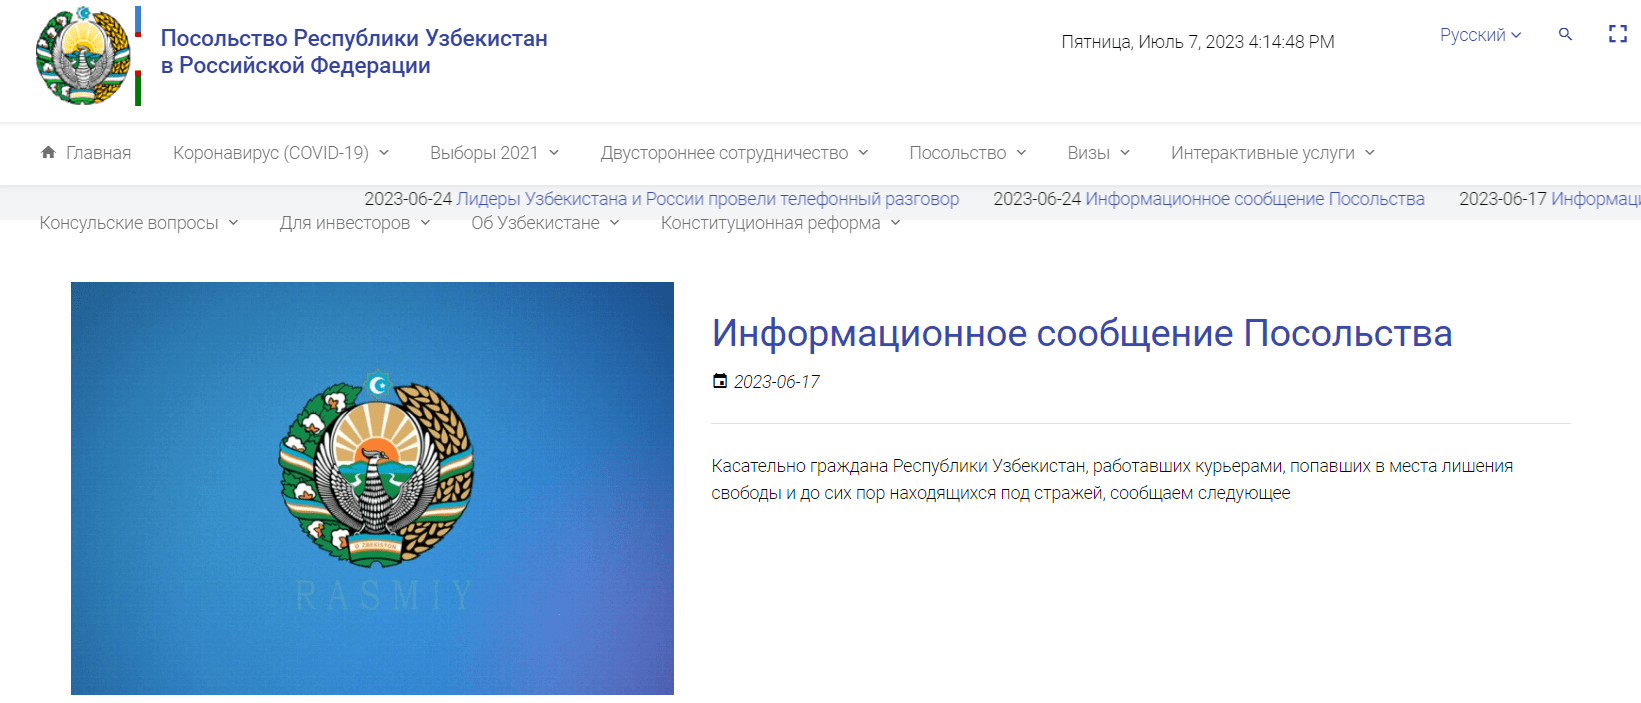 Посольство Республики Узбекистан в Российской Федерации (uzembassy.ru) - официальный сайт